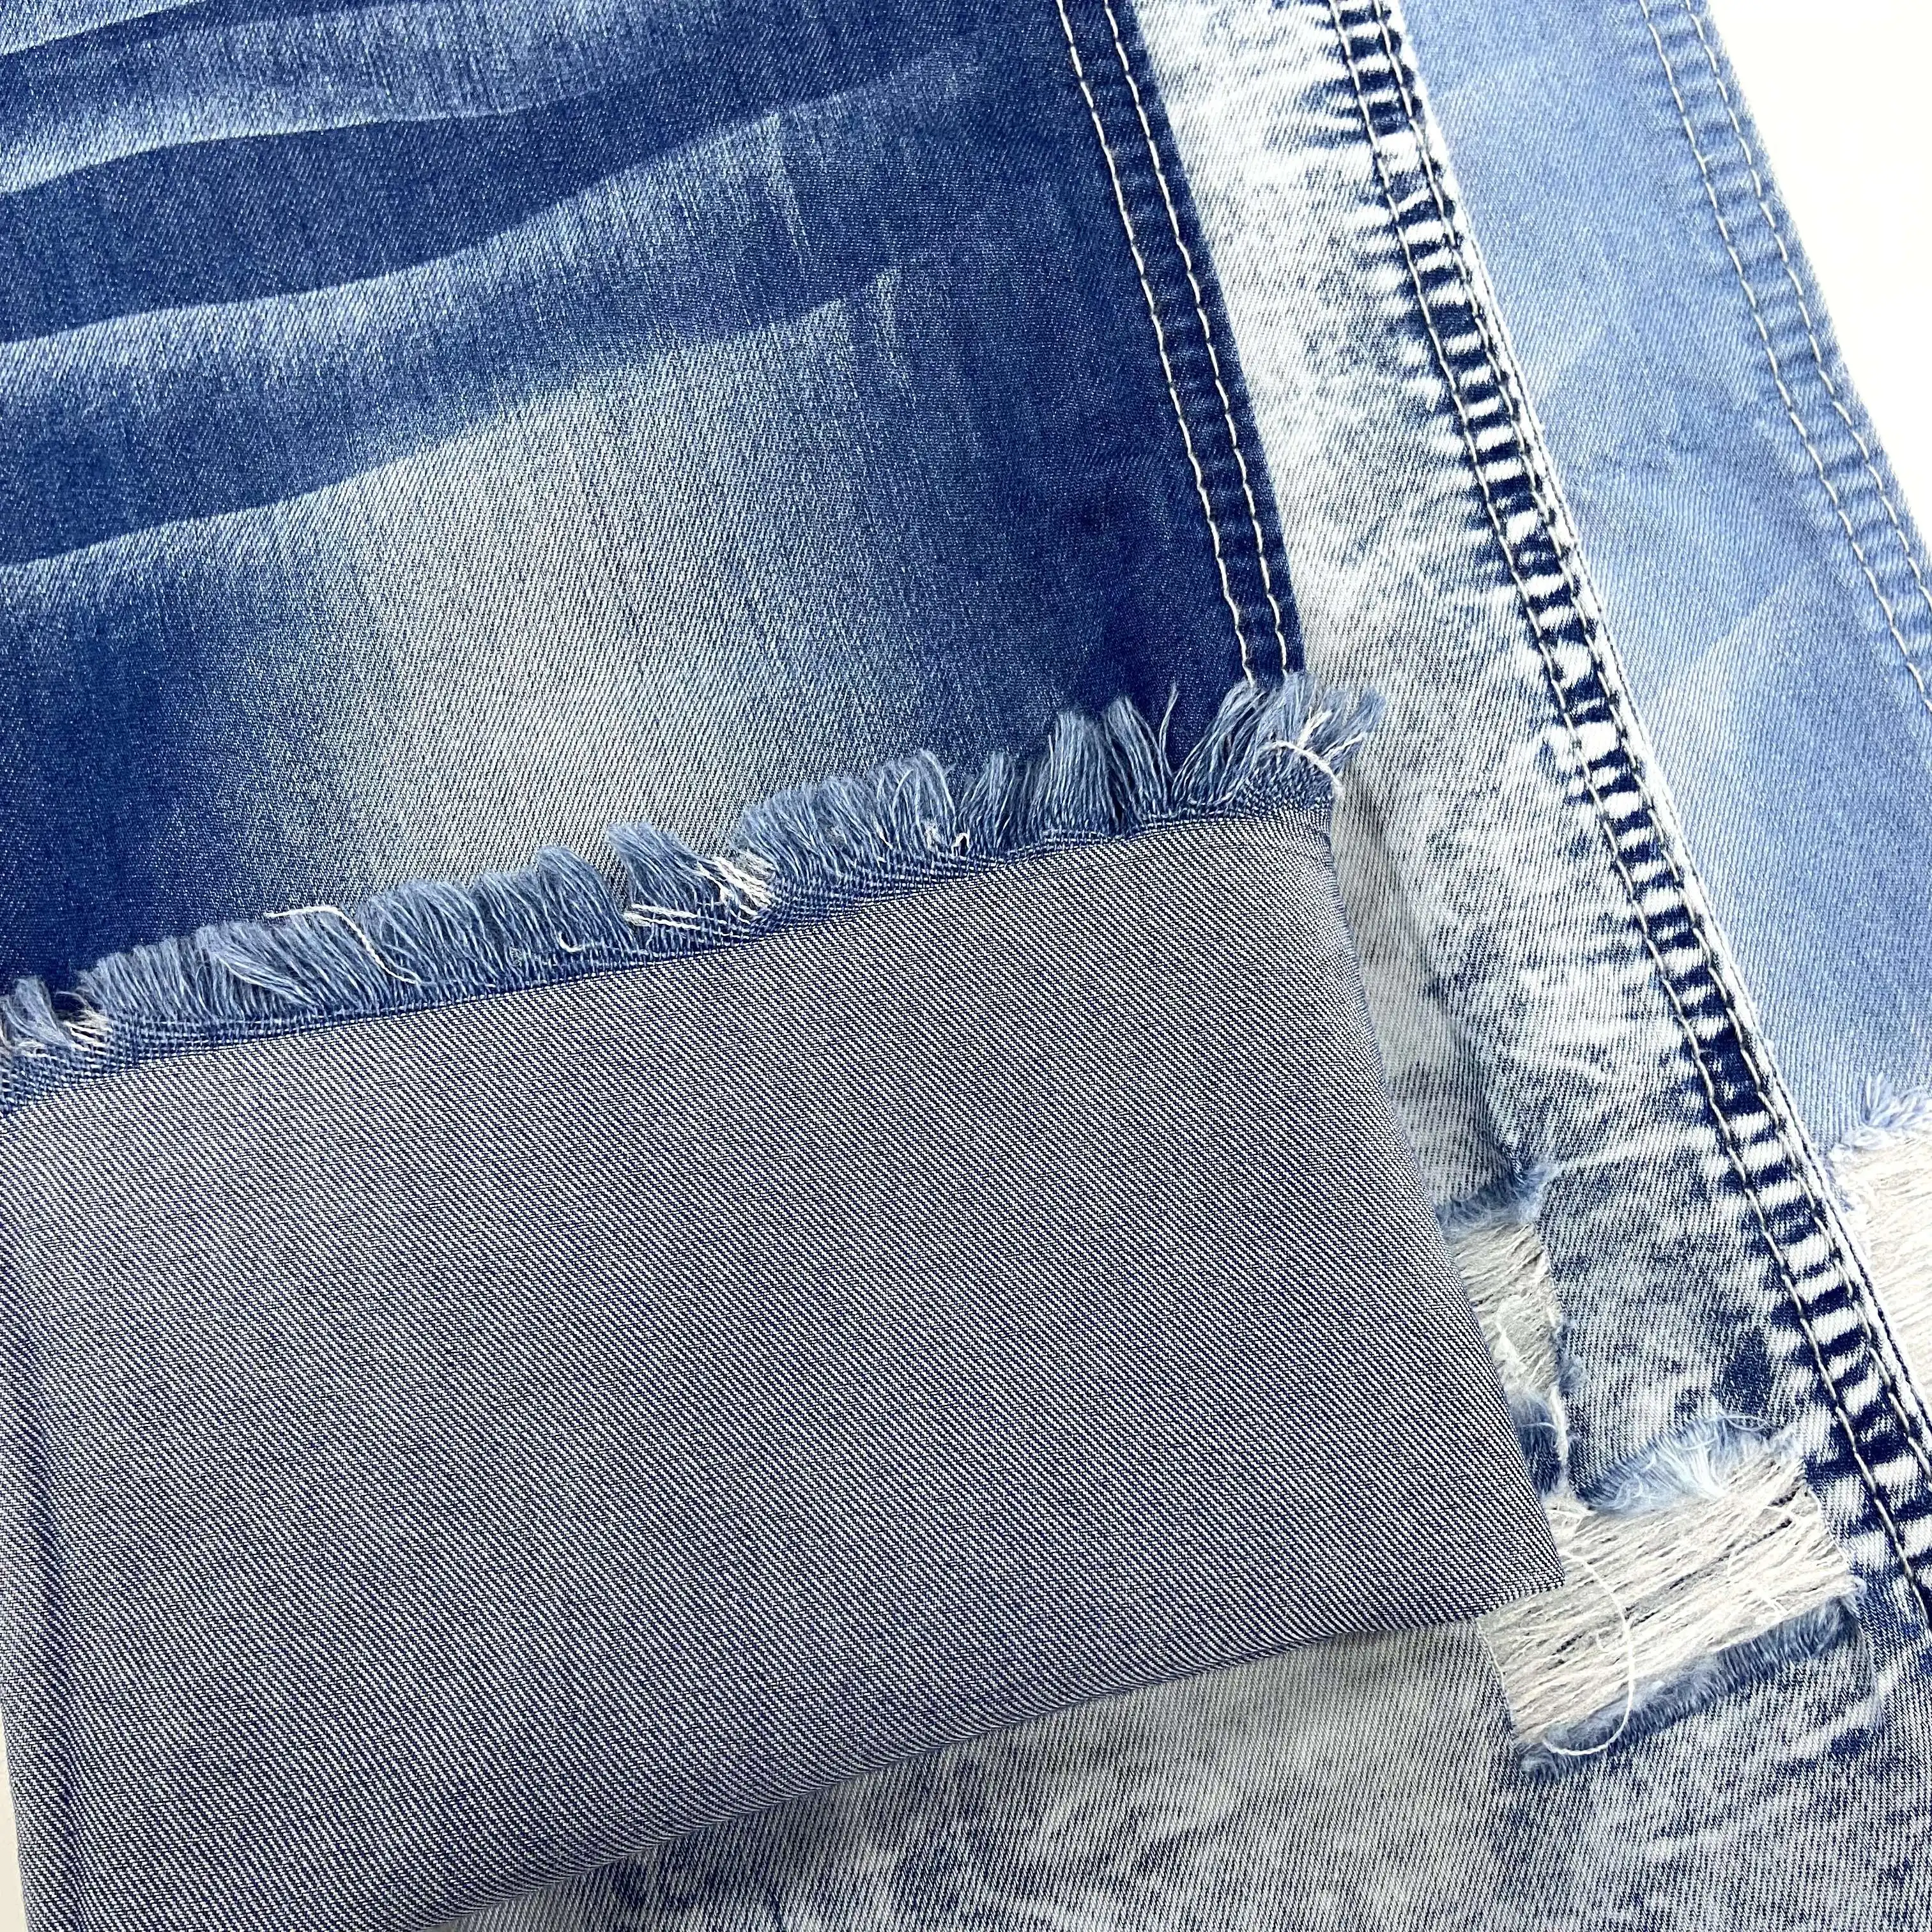 Jeans leve personalizado em estoque para mulheres, tecido de pedra estampado branco índigo, cera vintage, elastano, algodão, jeans elástico, lavado, desgastado